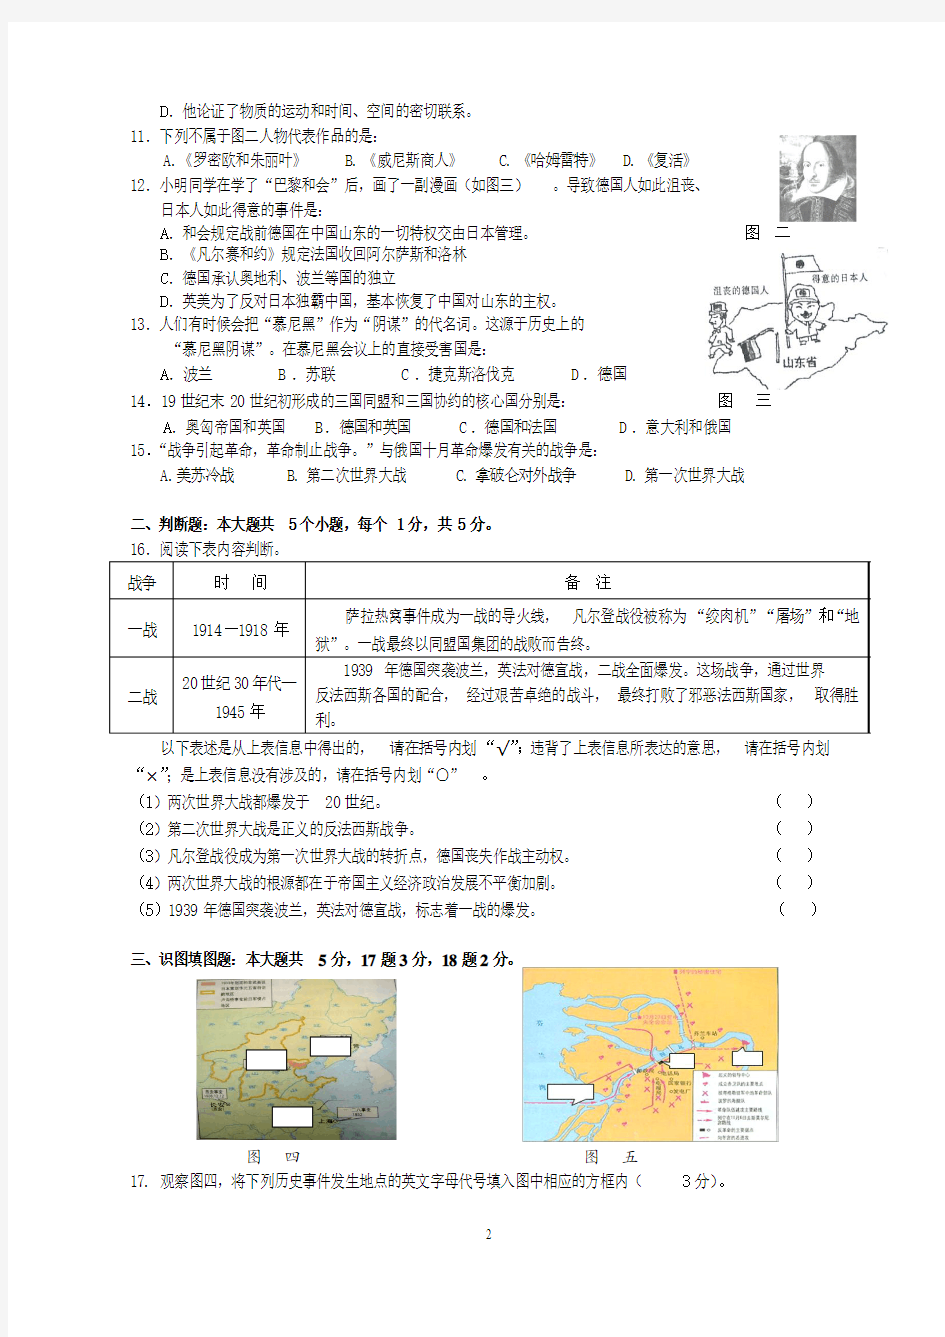 重庆一中初2010级09-10学年(下)开学考试——历史